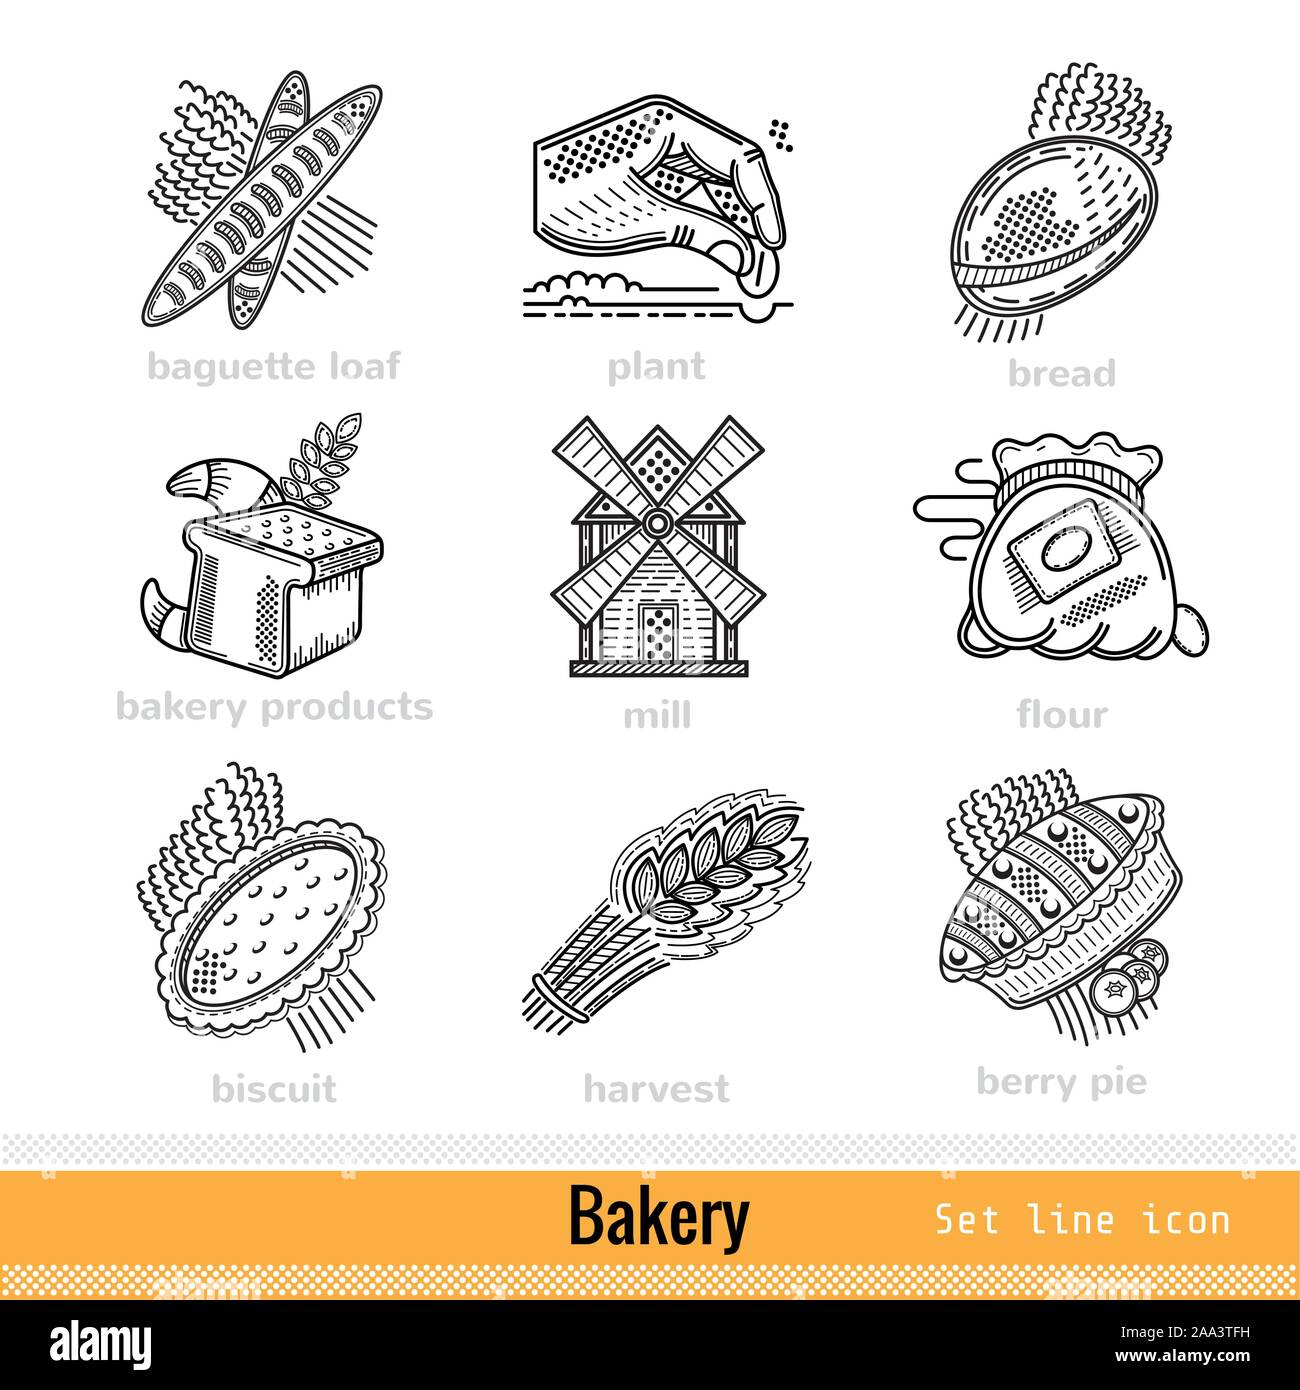 Satz von Bäckerei und Bäckerei Produktumriss Web Icons Stock Vektor